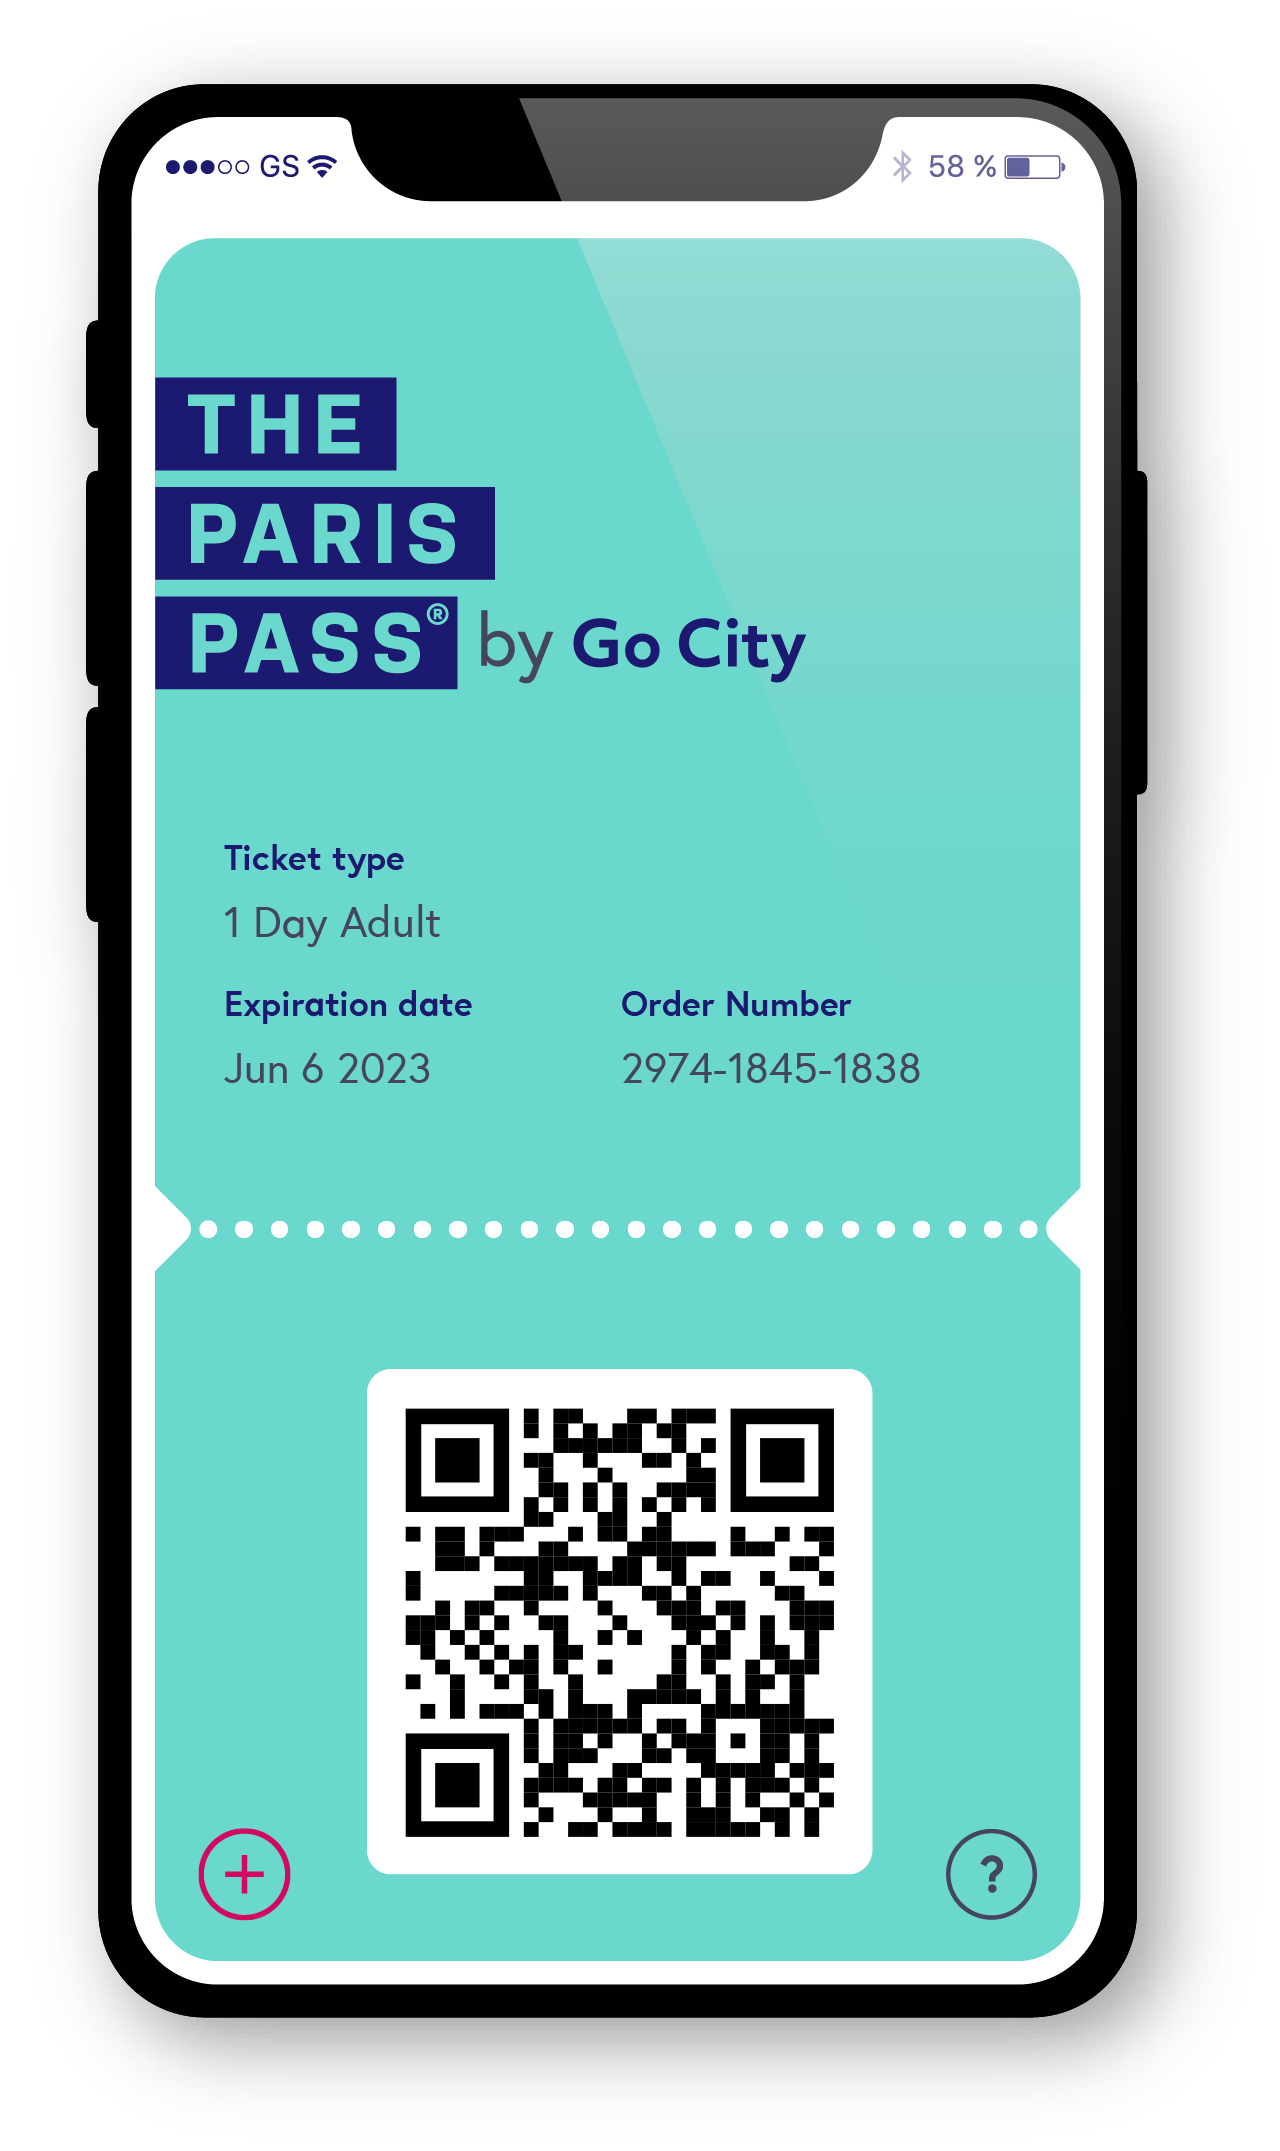 The Paris Pass 2022